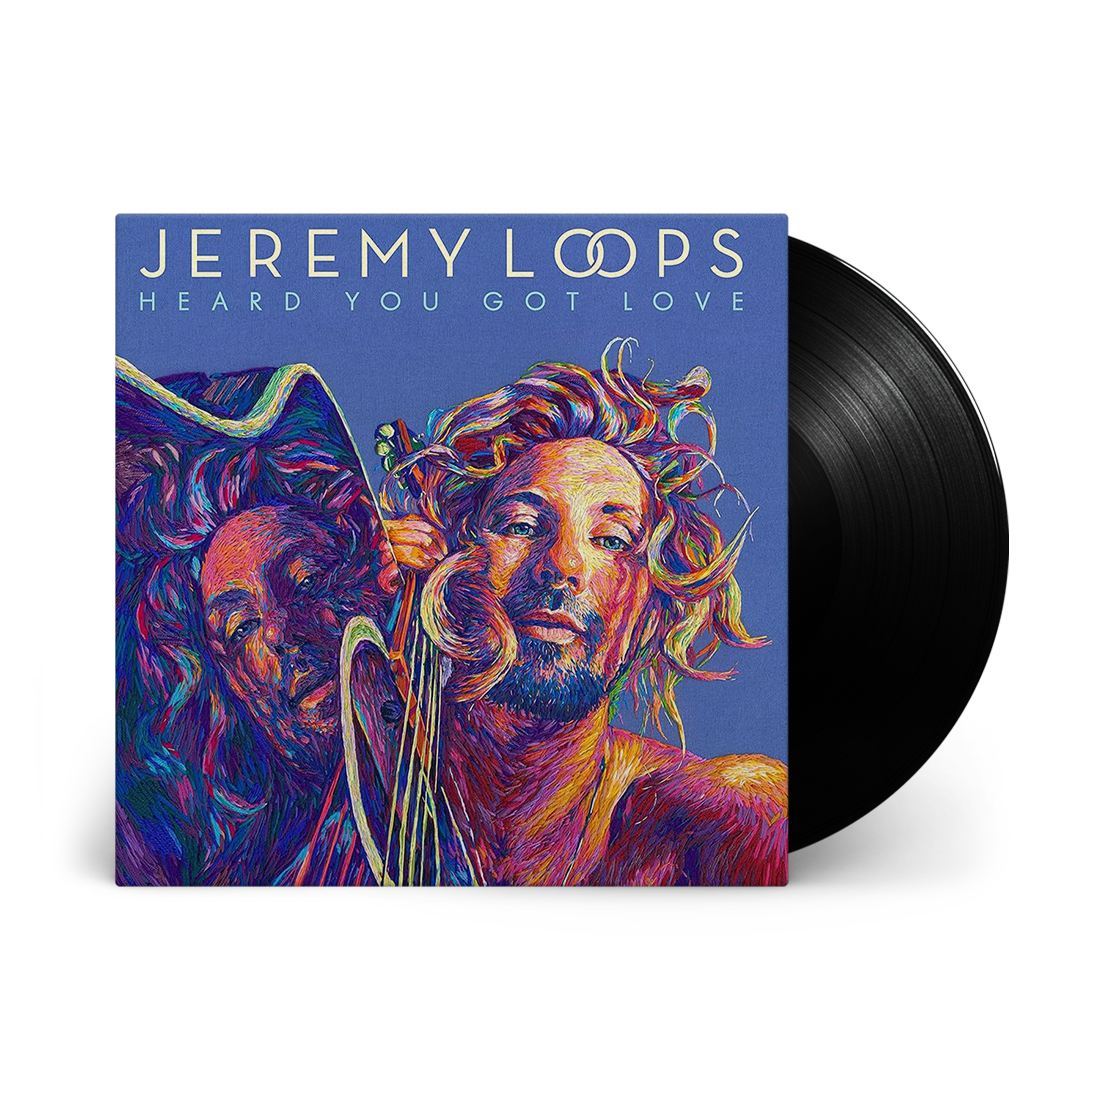 Jeremy Loops - Heard You Got Love: Vinyl LP